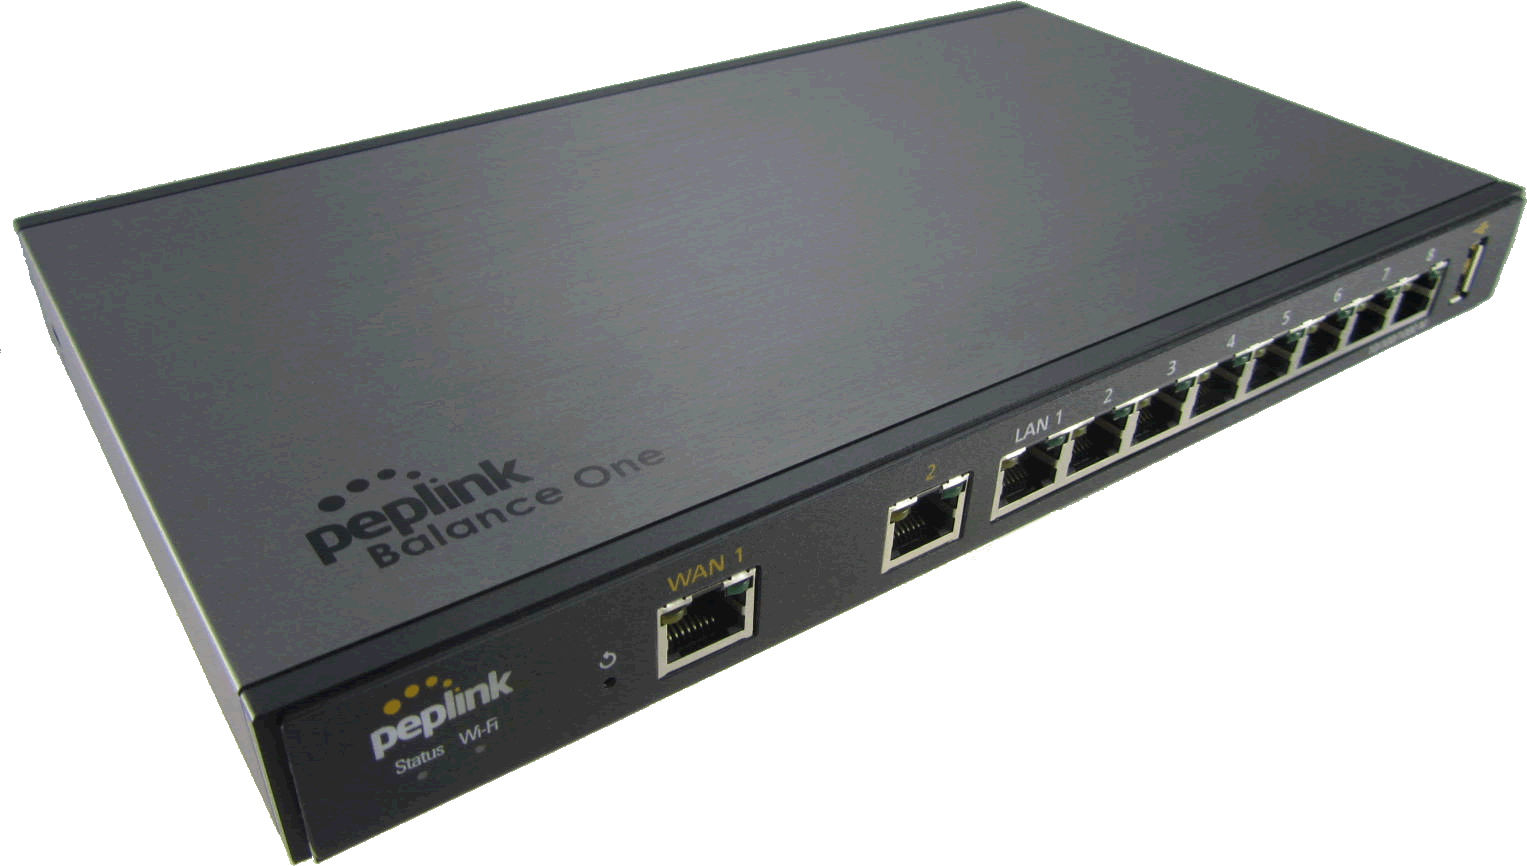   Routeurs  sdwan  service  450Mb Location : Balance One Core : routeur firewall pour gérer 5 liaisons WAN